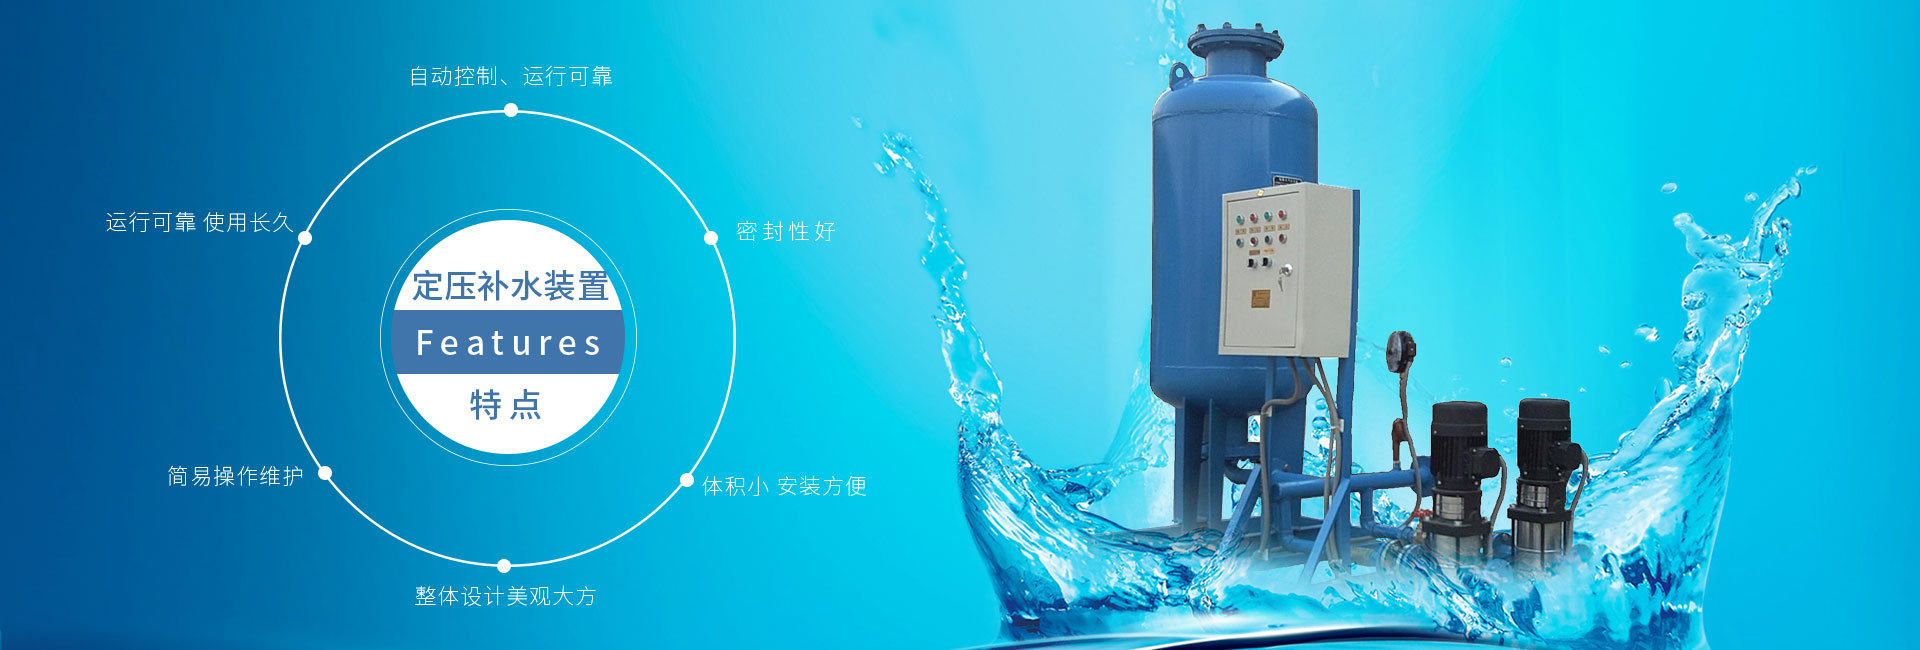 定压补水装置自动控制安全可靠